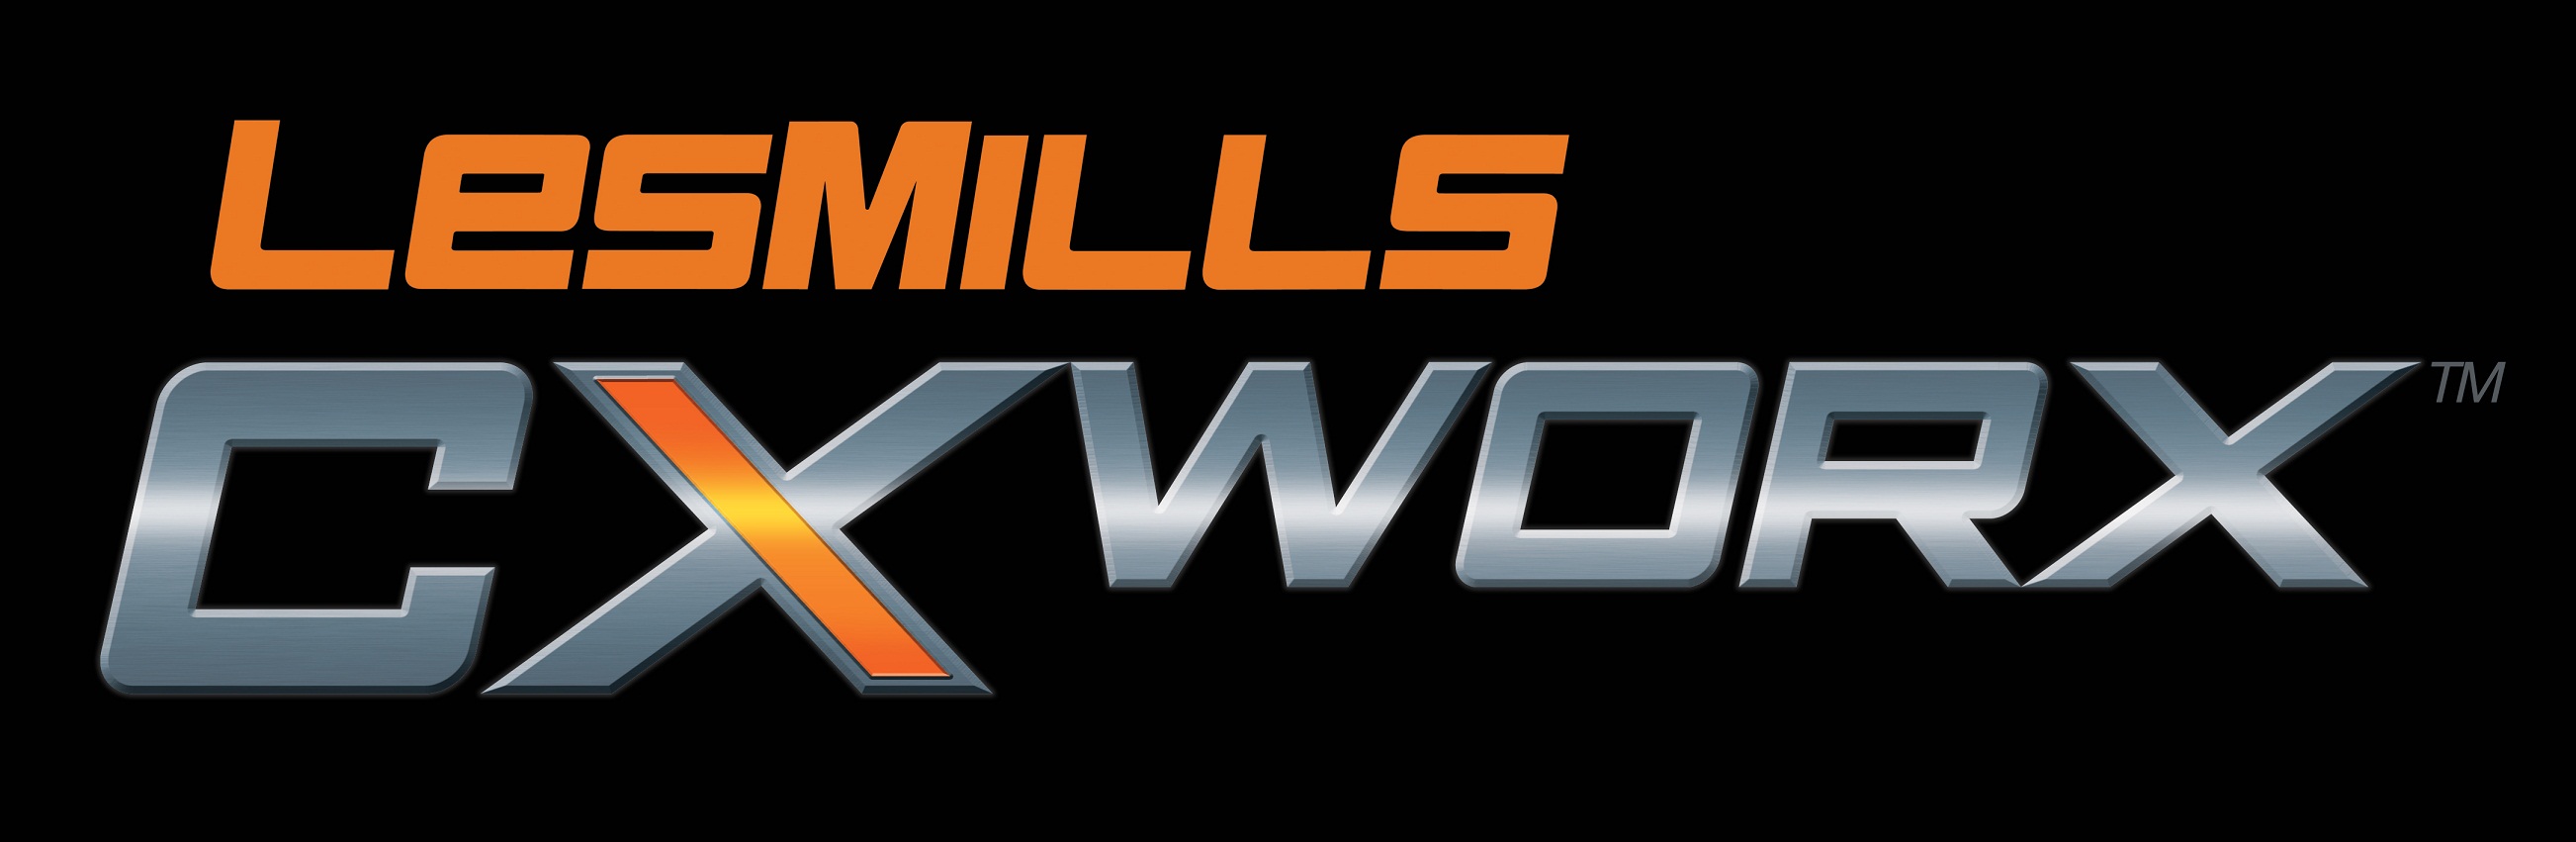 CXWorks logo ii